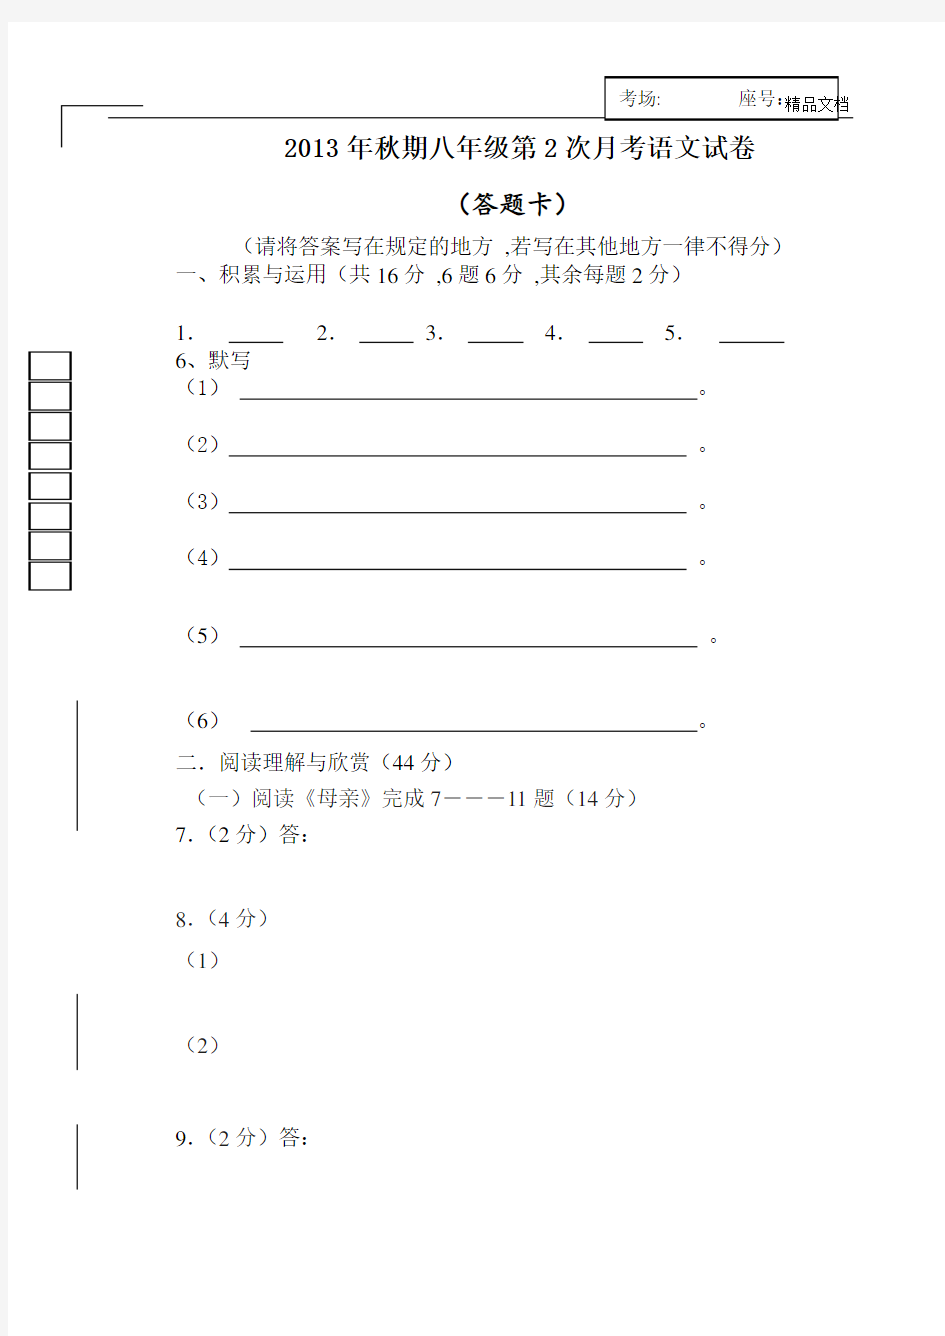 初中语文答题卡月考模板.doc